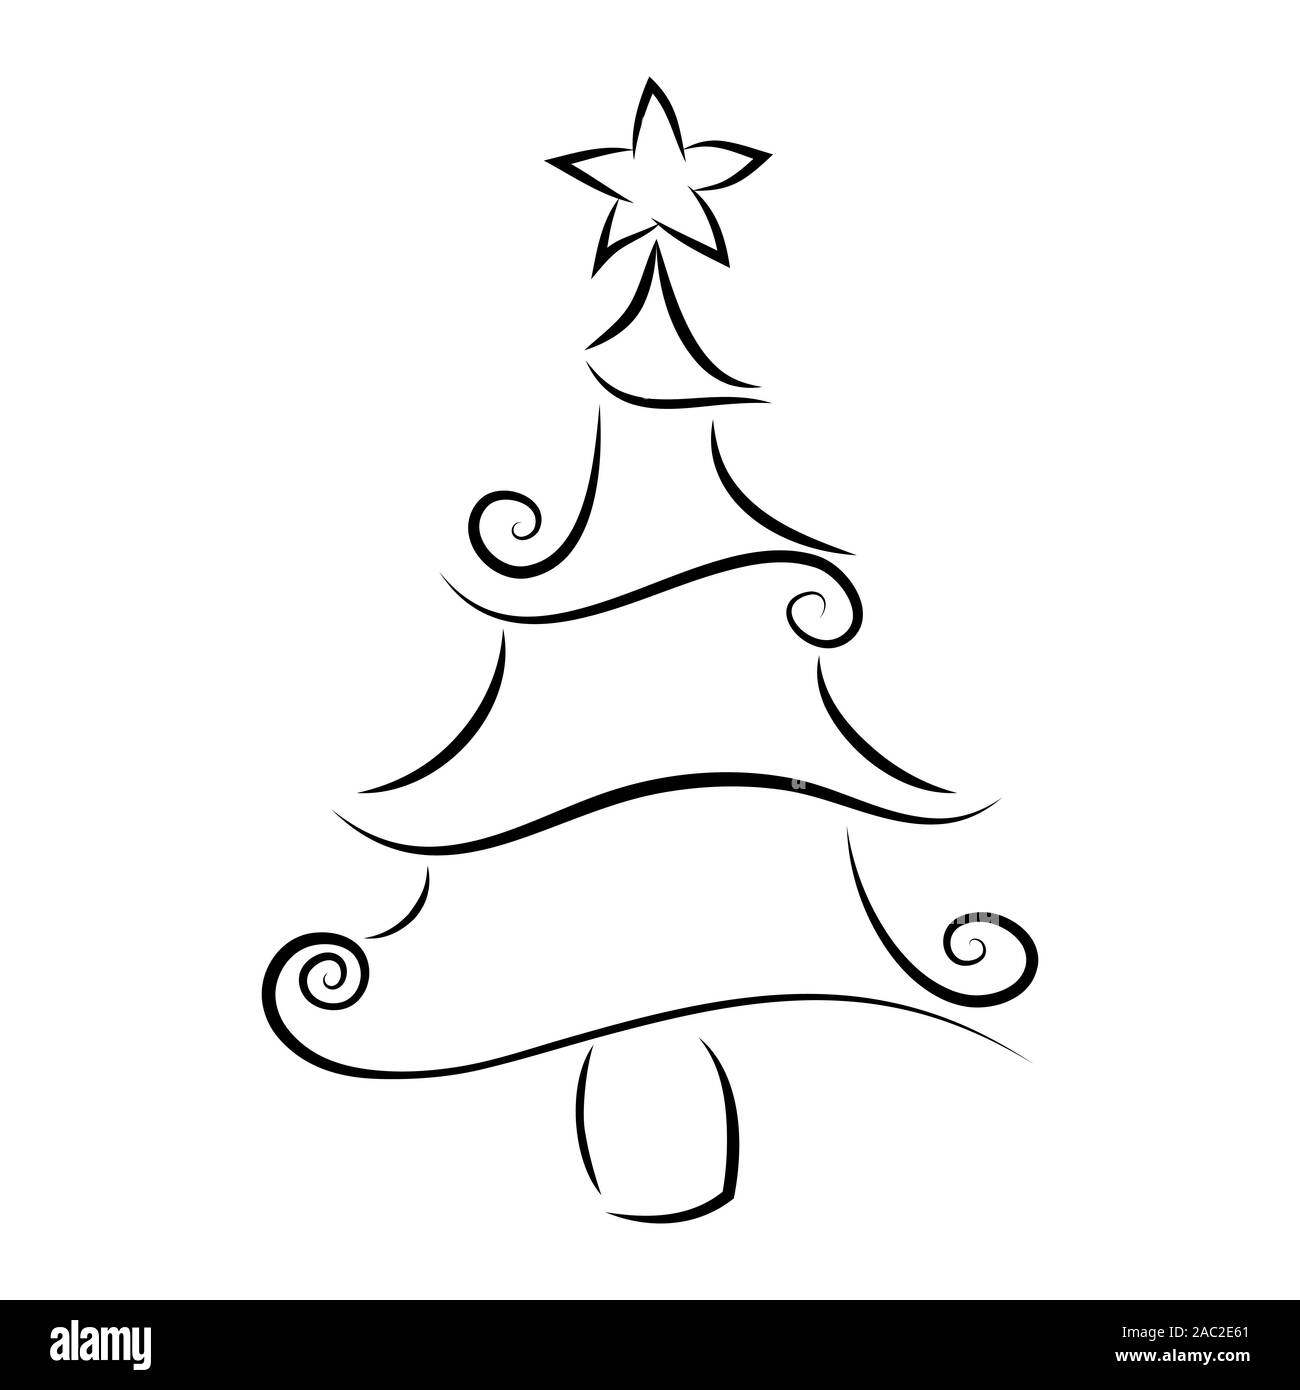 Weihnachtsbaum Umriss mit einem dekorativen Element. dekoriert, lockig, abstrakte, isolierte Tanne. Frohe Weihnachten Frohes Neues Jahr 2020 Gruß Auto Stock Vektor